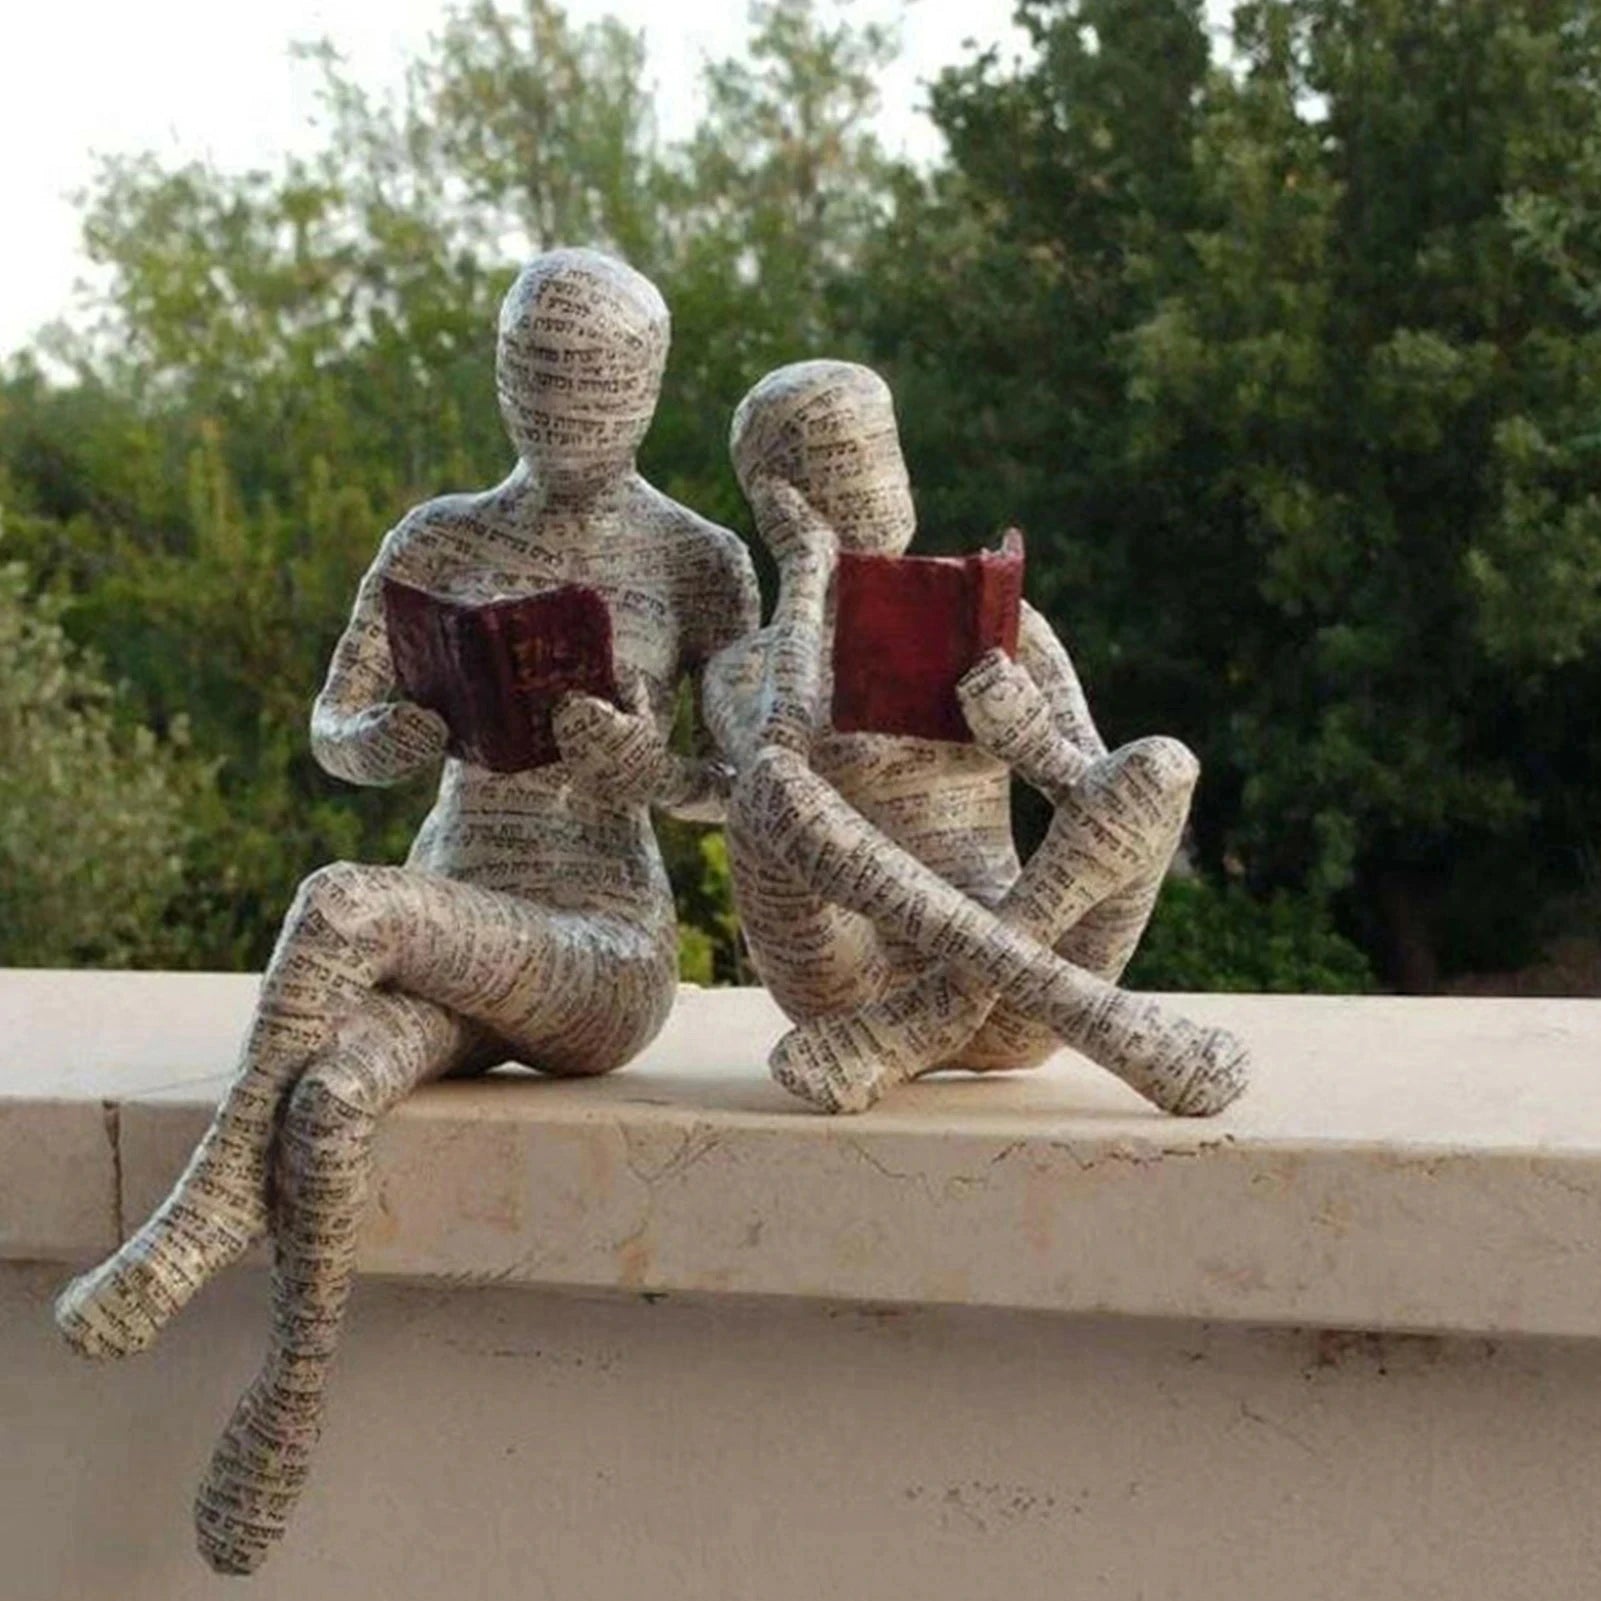 اللب امرأة قراءة كتاب الديكور التأمل نمط المنزل تمثال راتنج مجردة النحت تمثال للديكور المنزل الحديثة قبالة